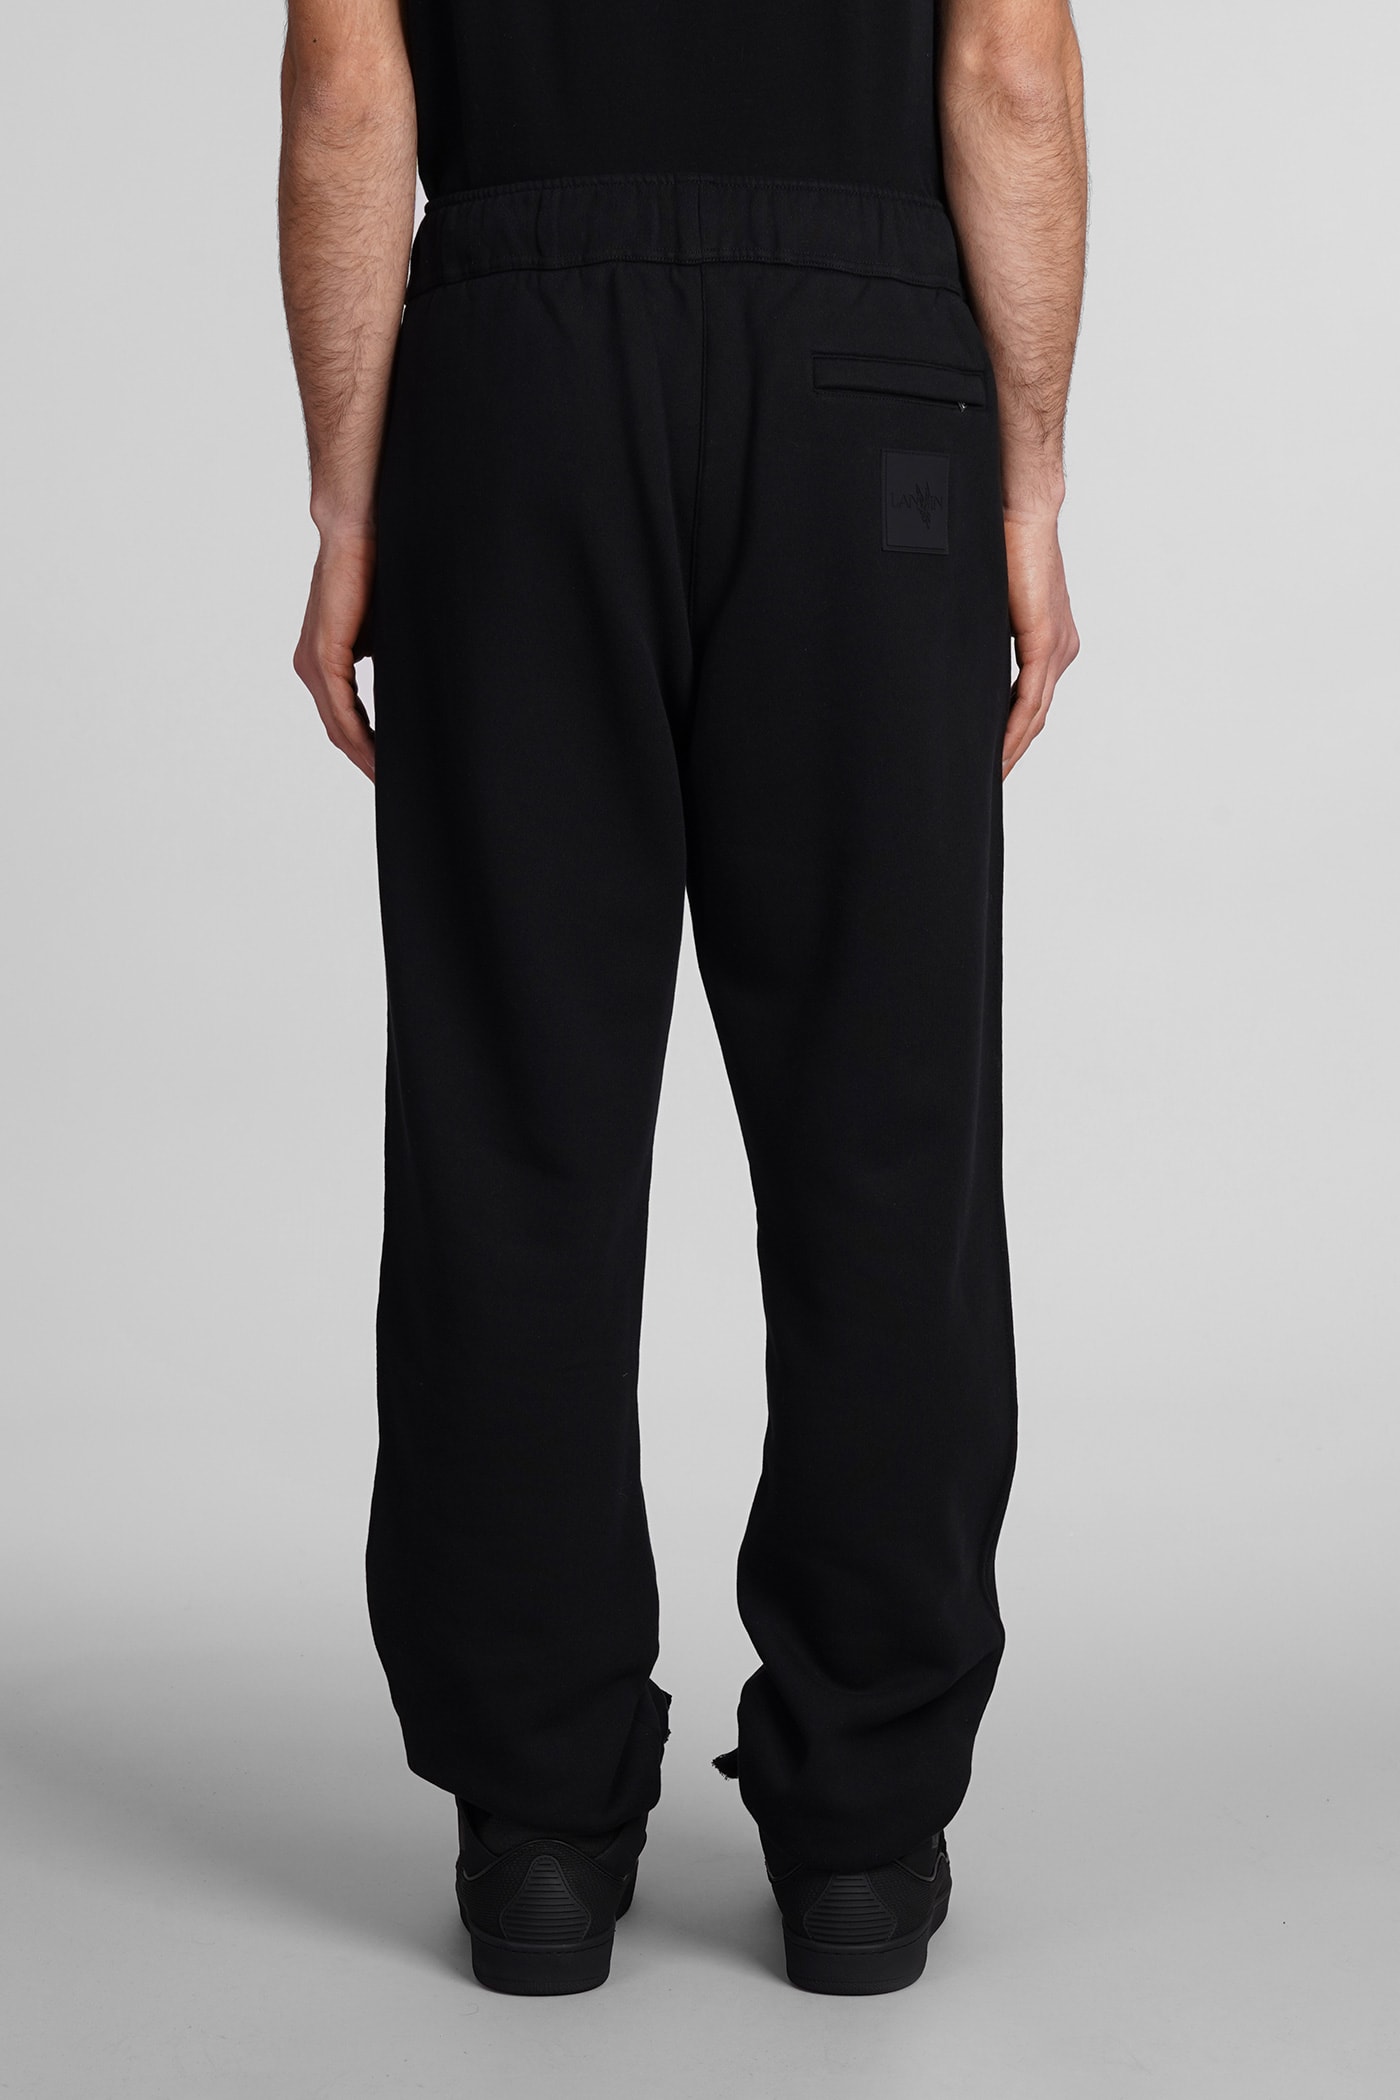 Shop Lanvin Pants In Black Cotton